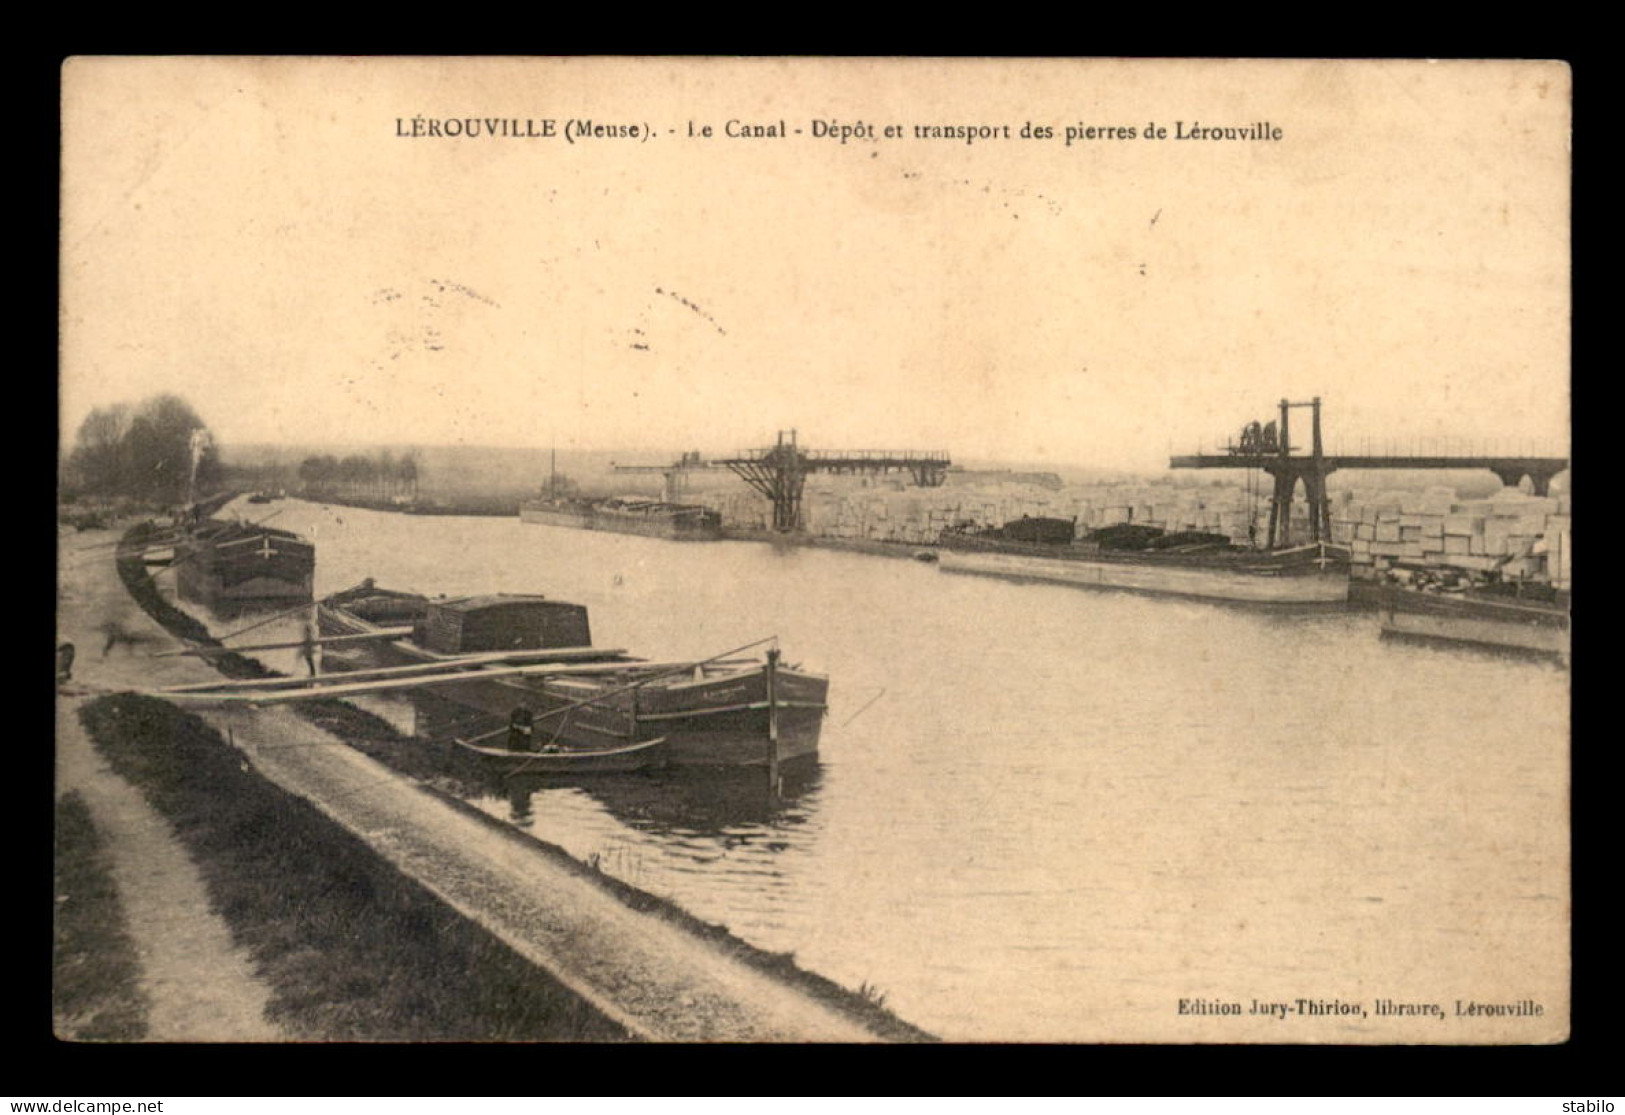 55 - LEROUVILLE - LE CANAL - DEPOT ET TRANSPORT DES PIERRES DE LEROUVILLE - PENICHES - EDITEUR JURY-THIRION - Lerouville